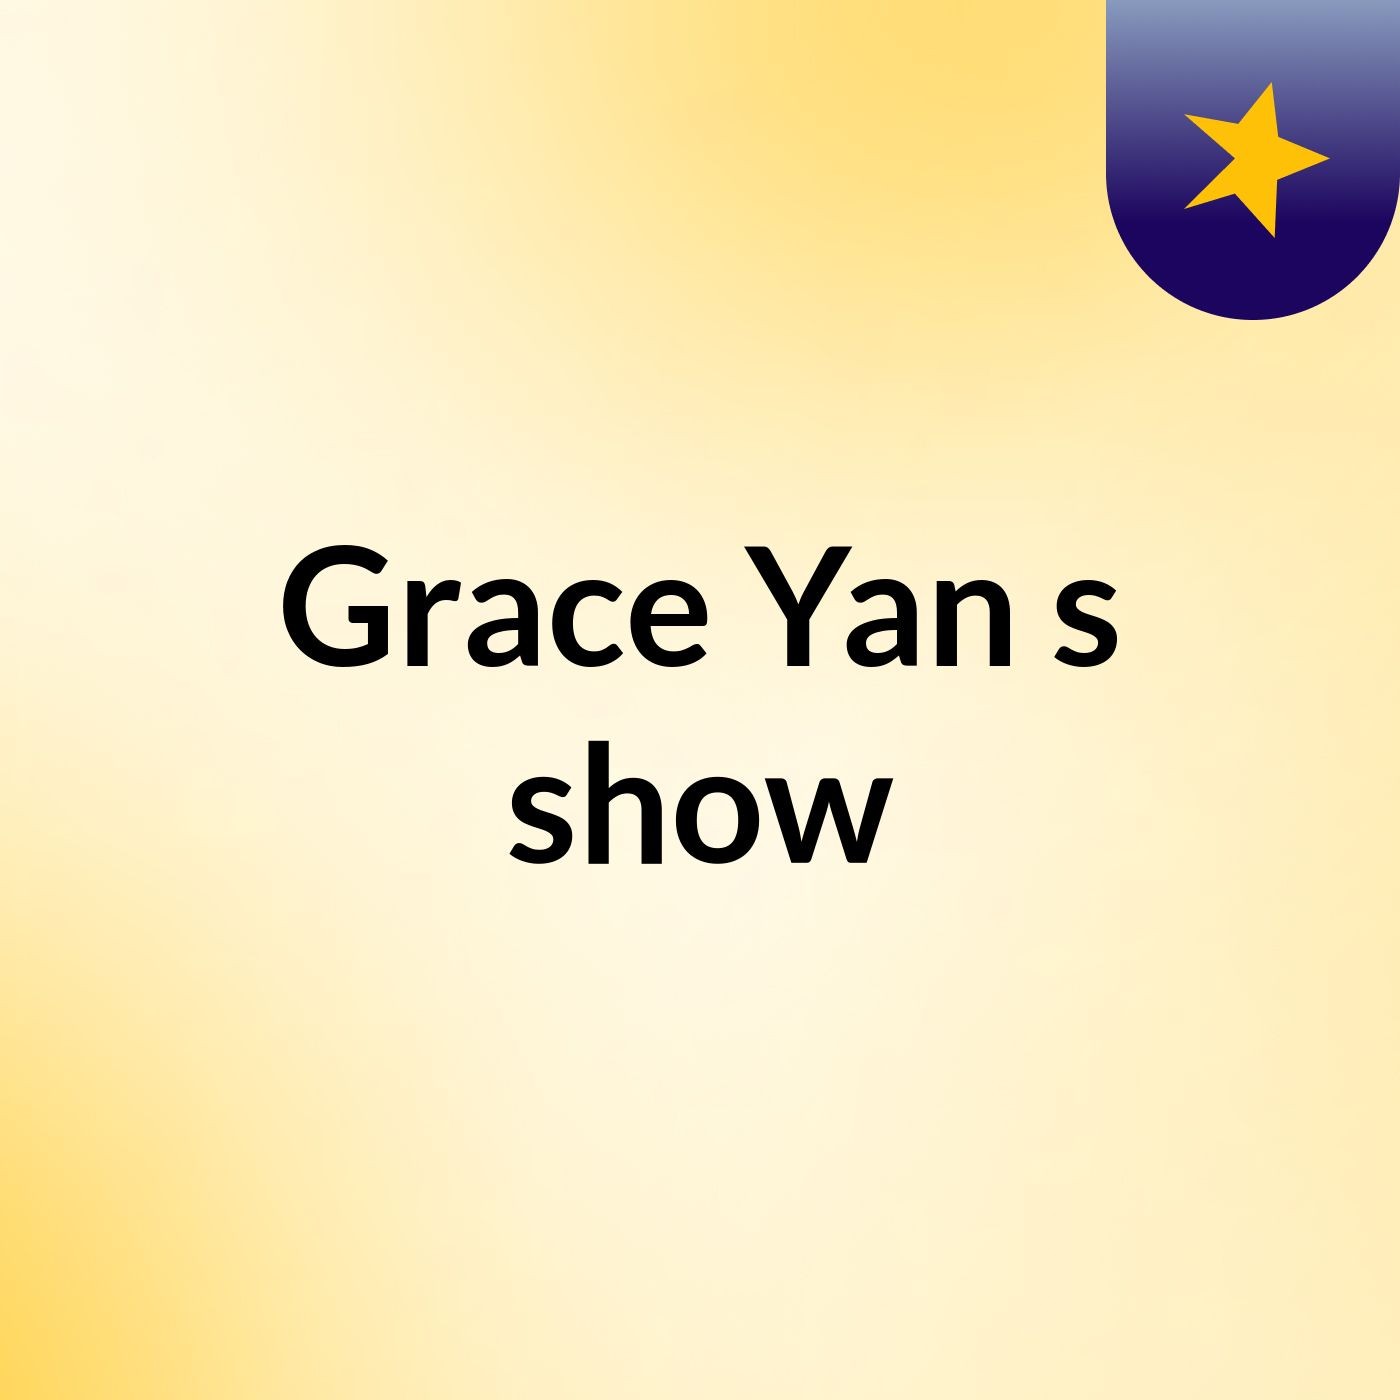 Grace Yan's show